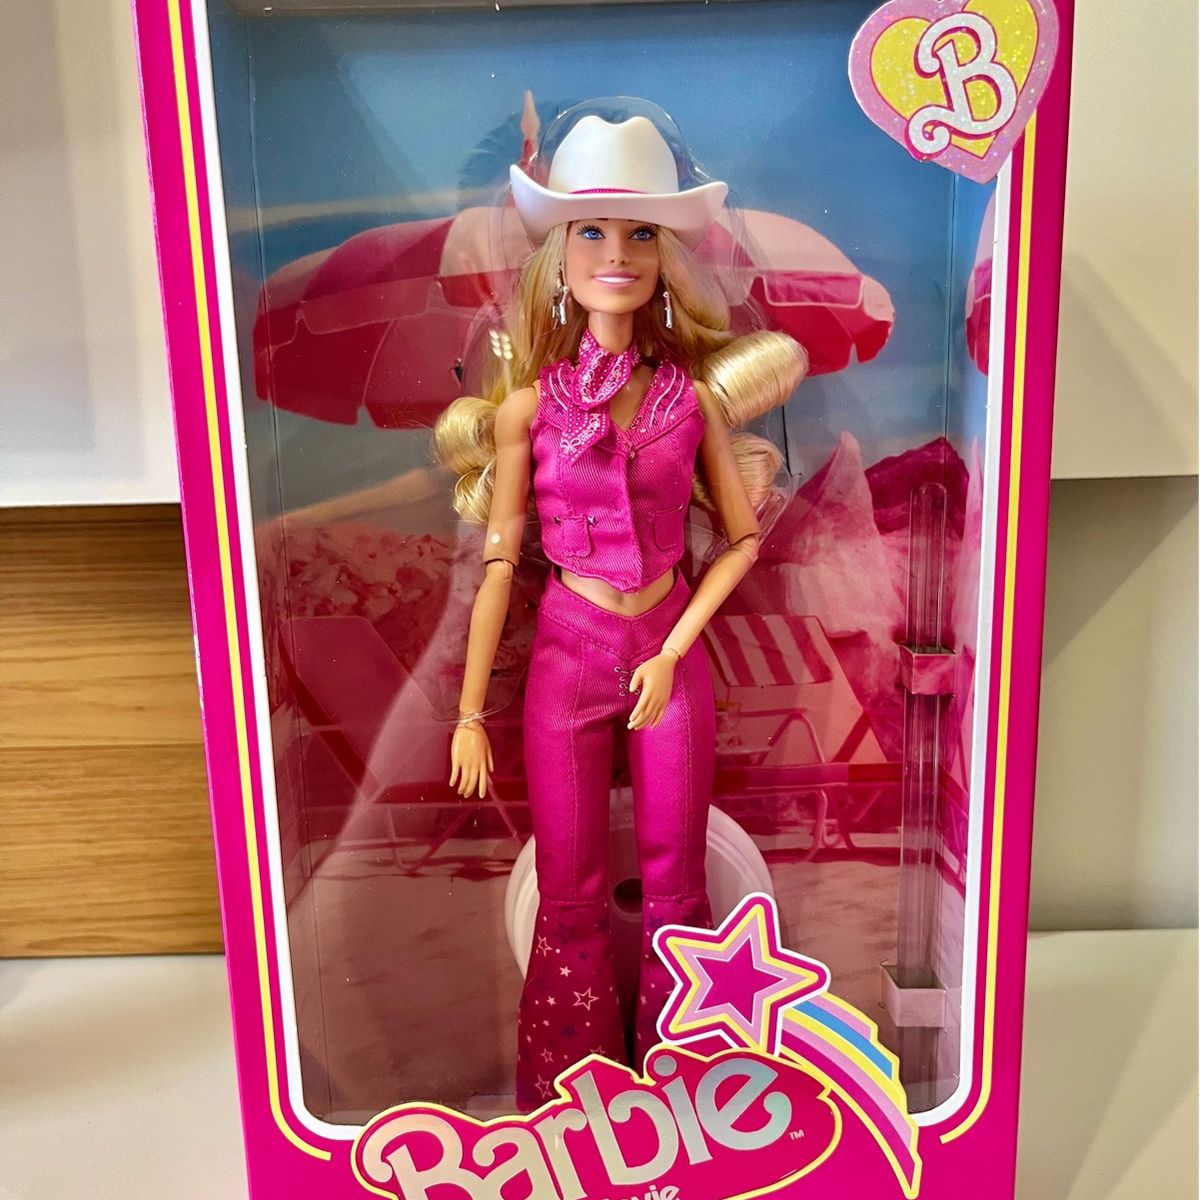 Modelo Infantil Barbie Filme Cowgirl / Cowboy Pink